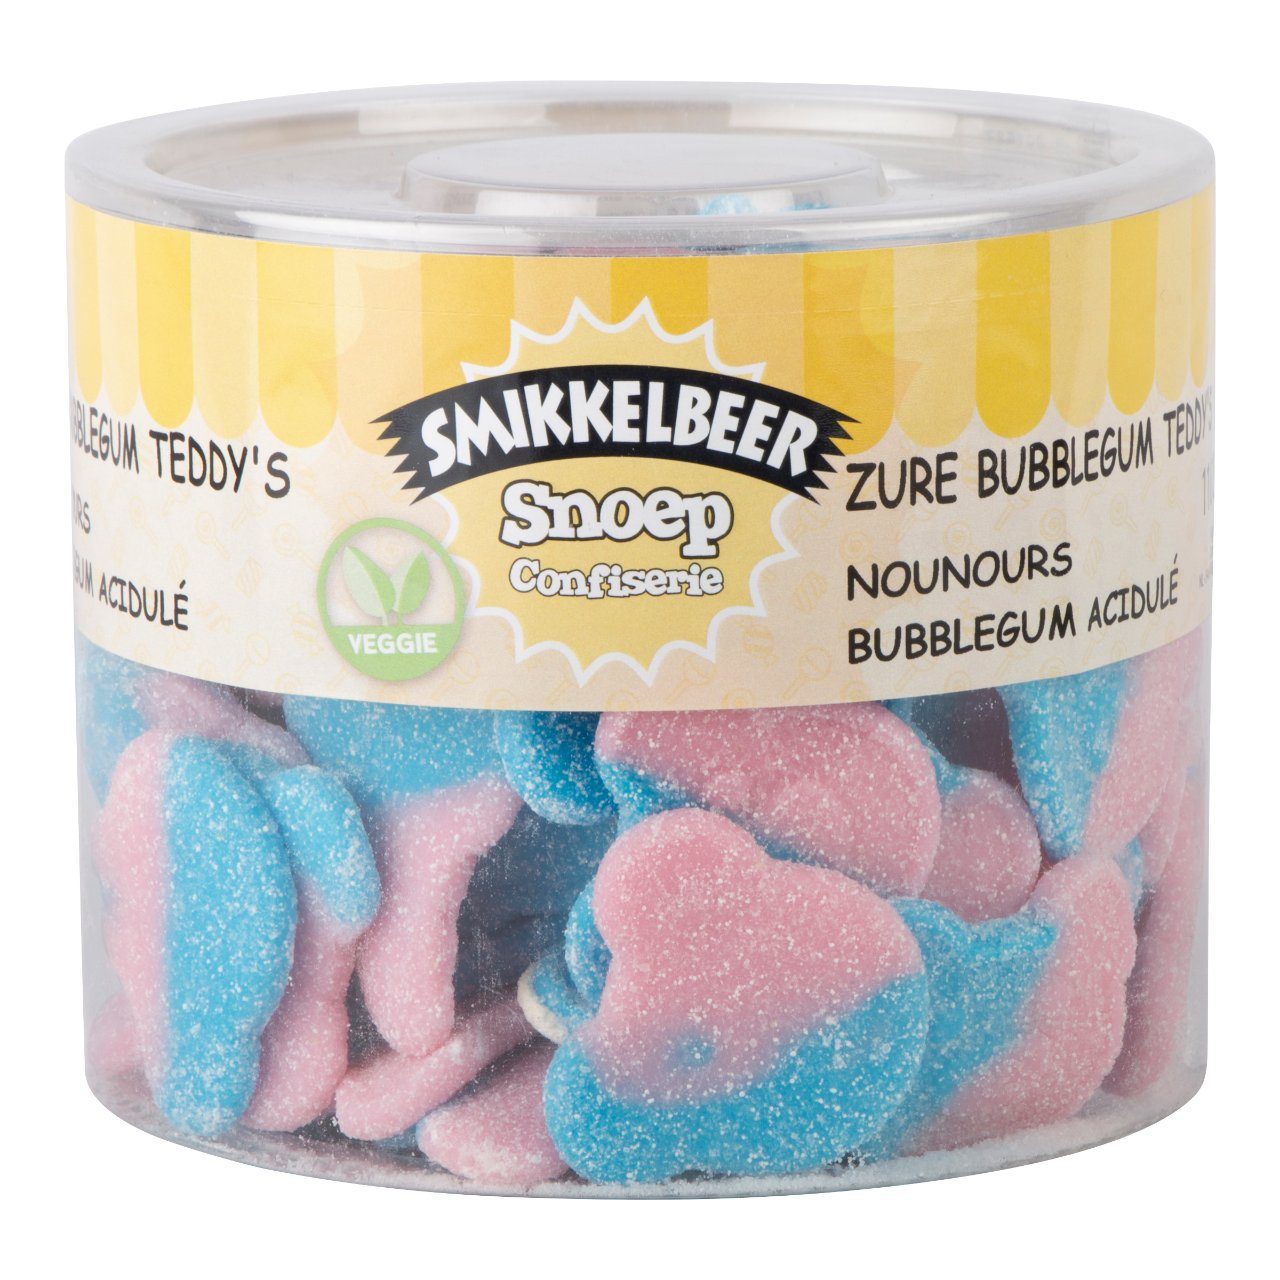 Zure bubblegum teddys